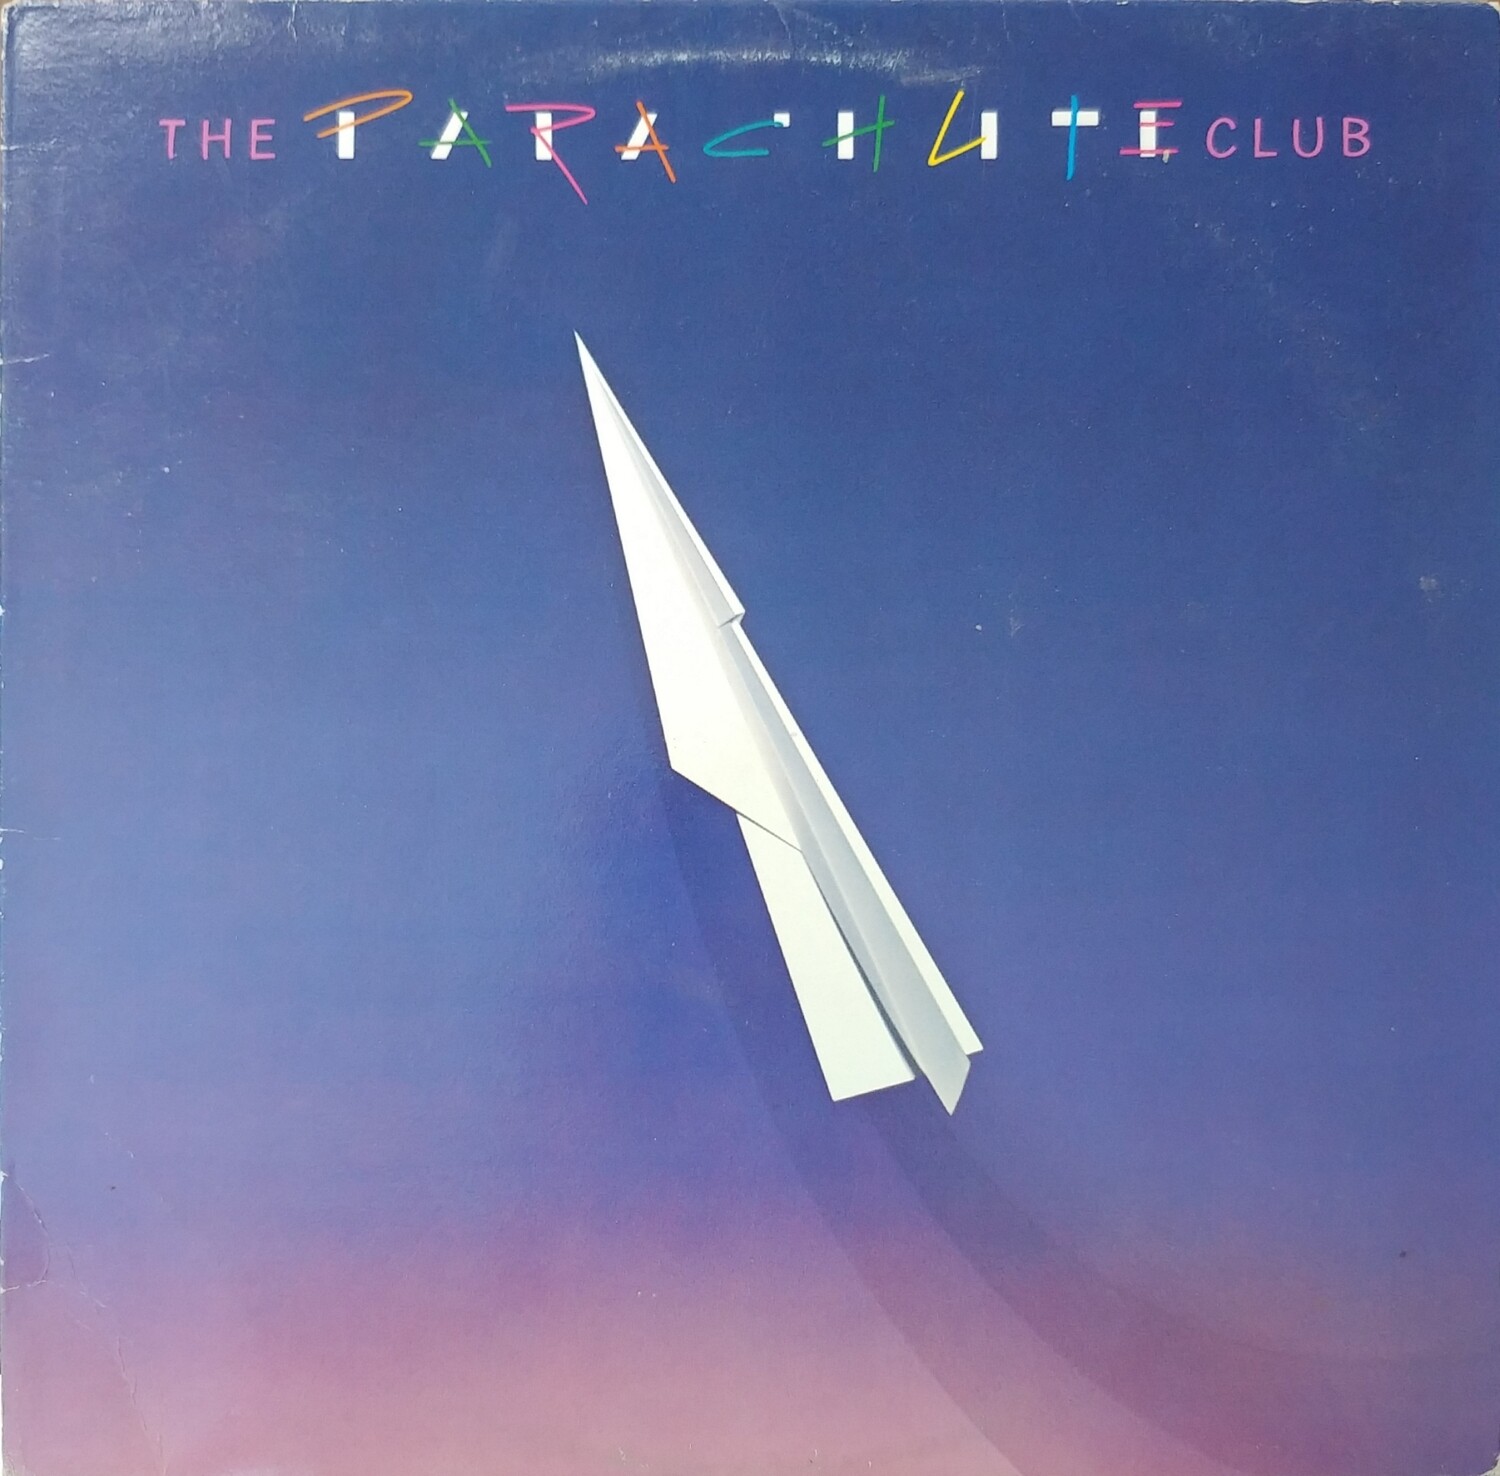 The parachute club - The parachute club